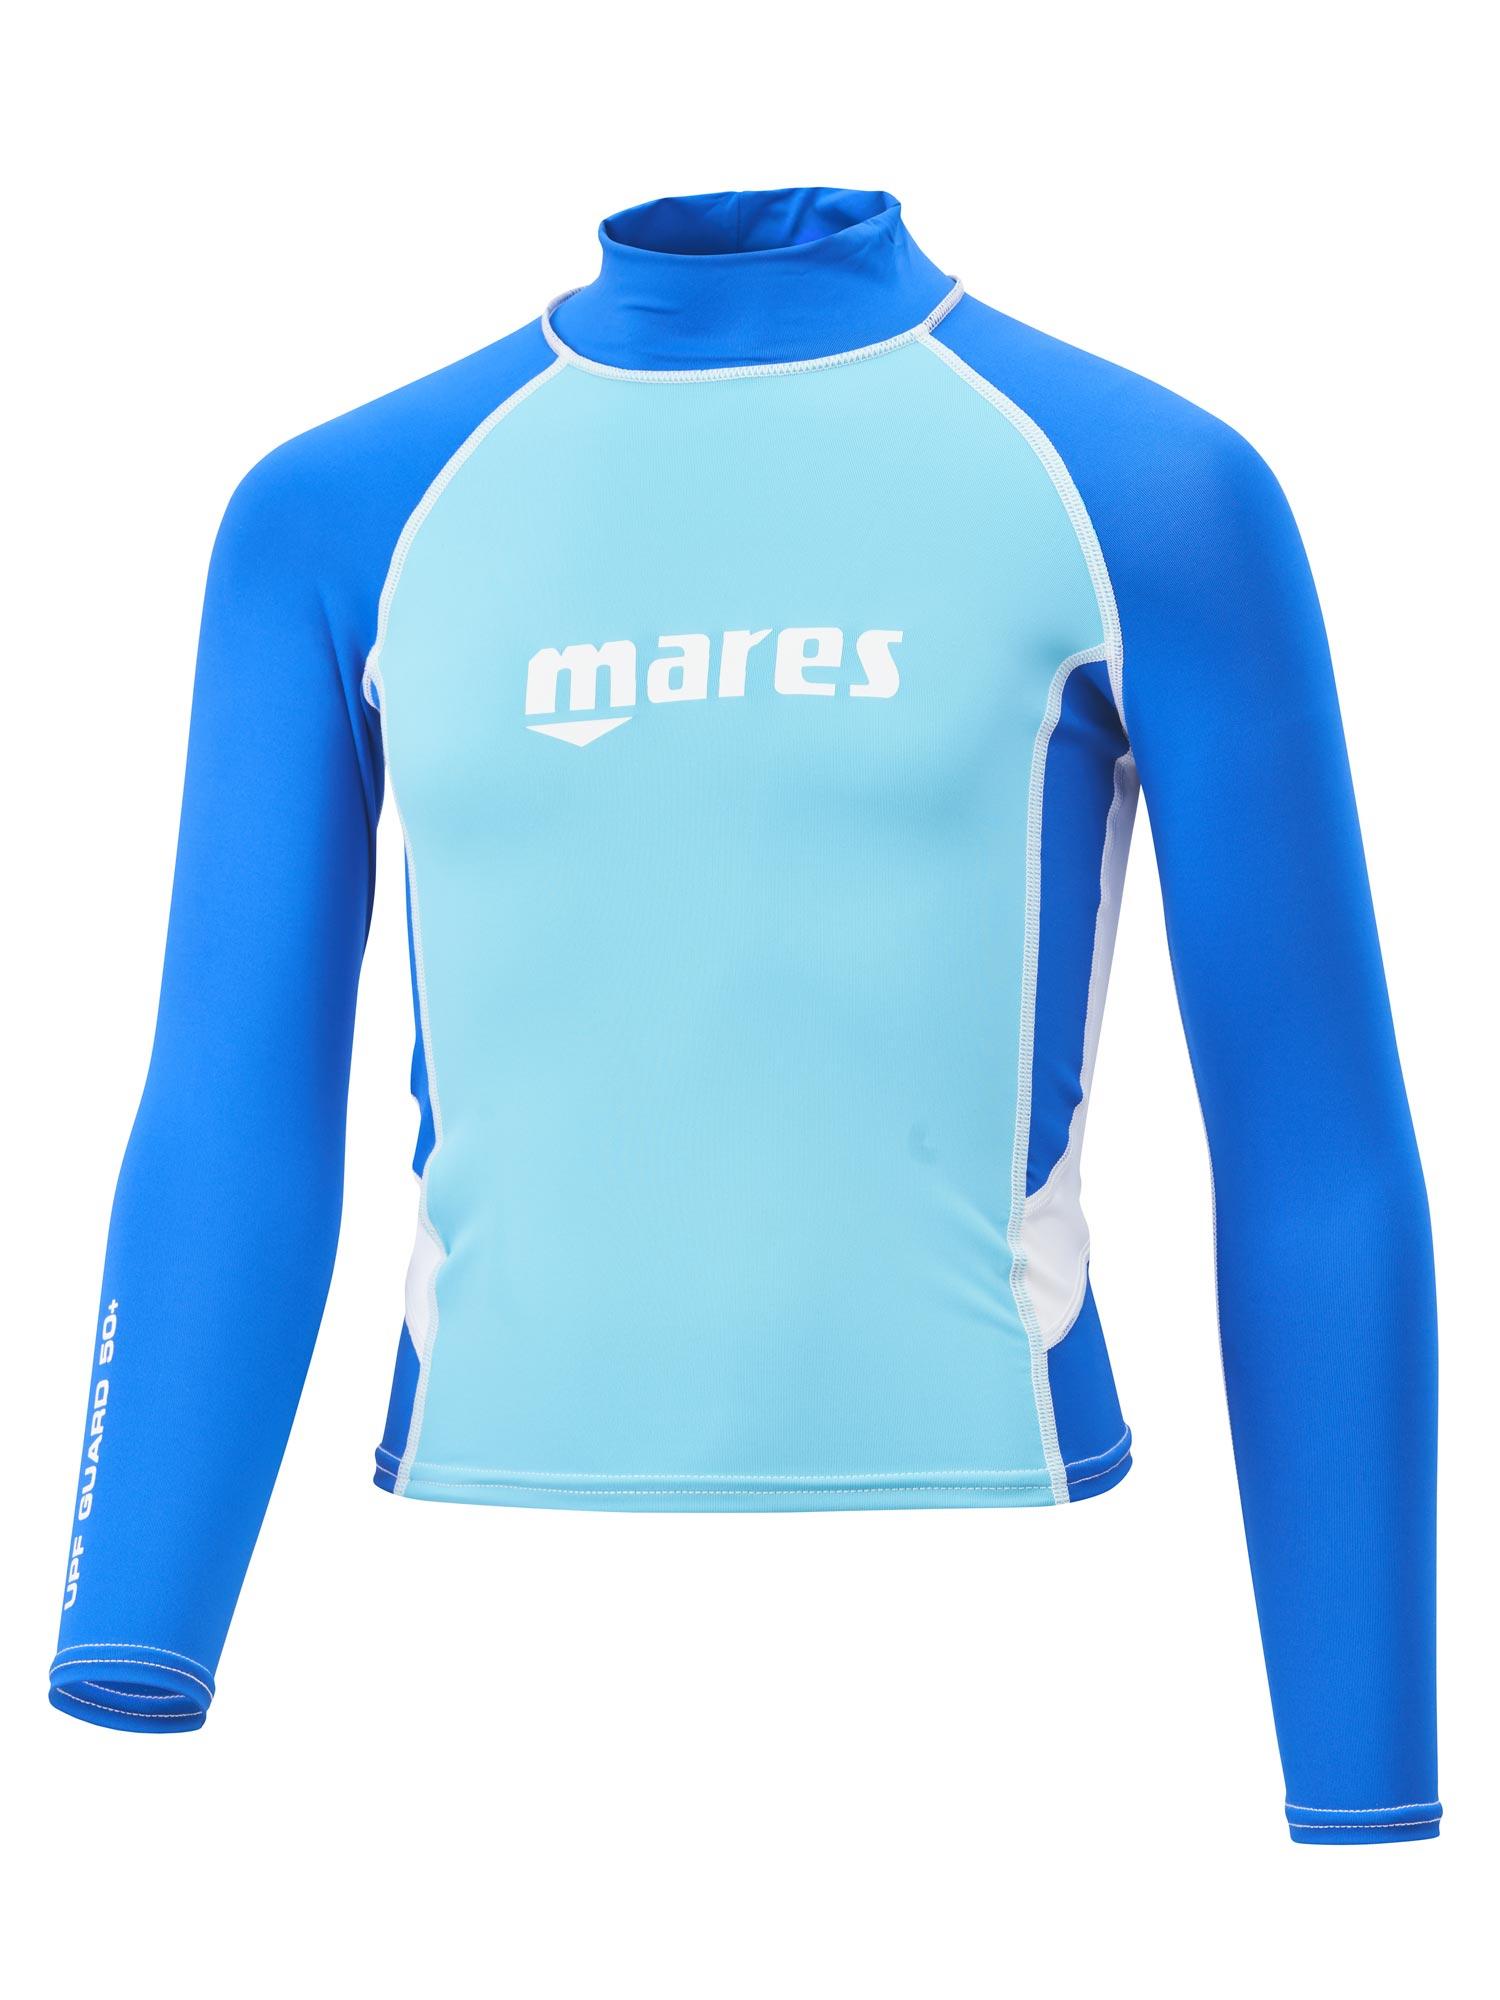 Selected image for MARES Majica za plivanje za dečake plava